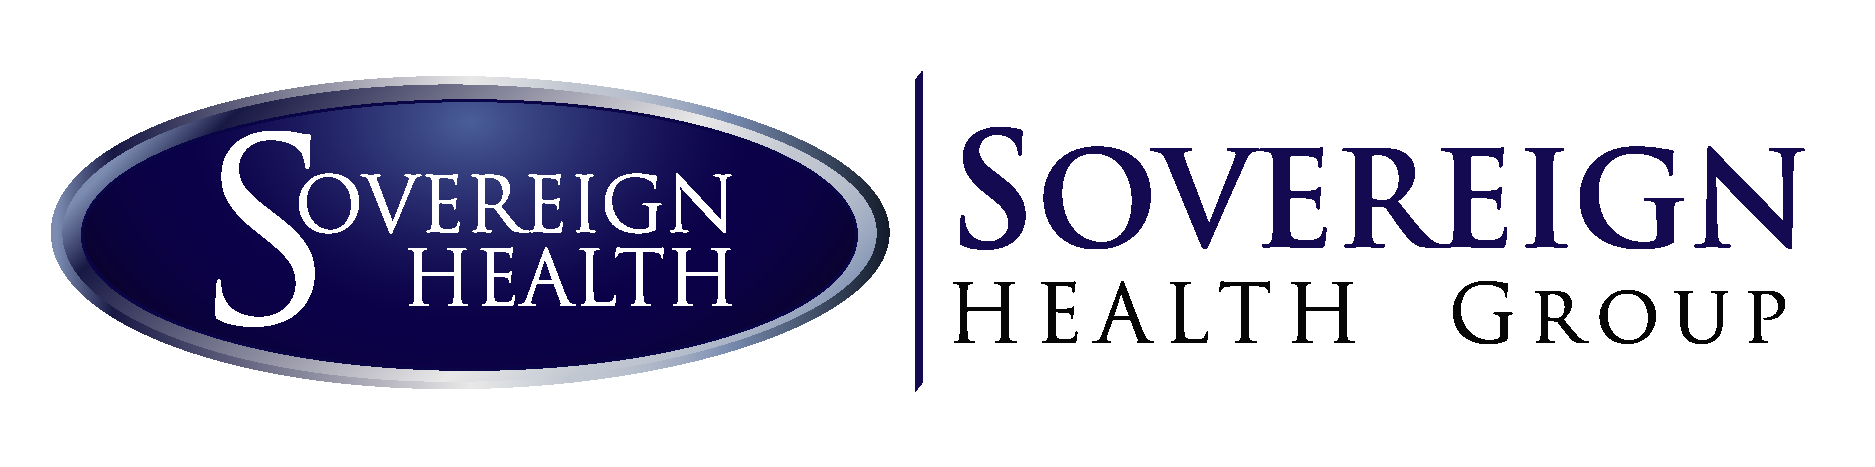 Sovereign Health Group Logo Vector